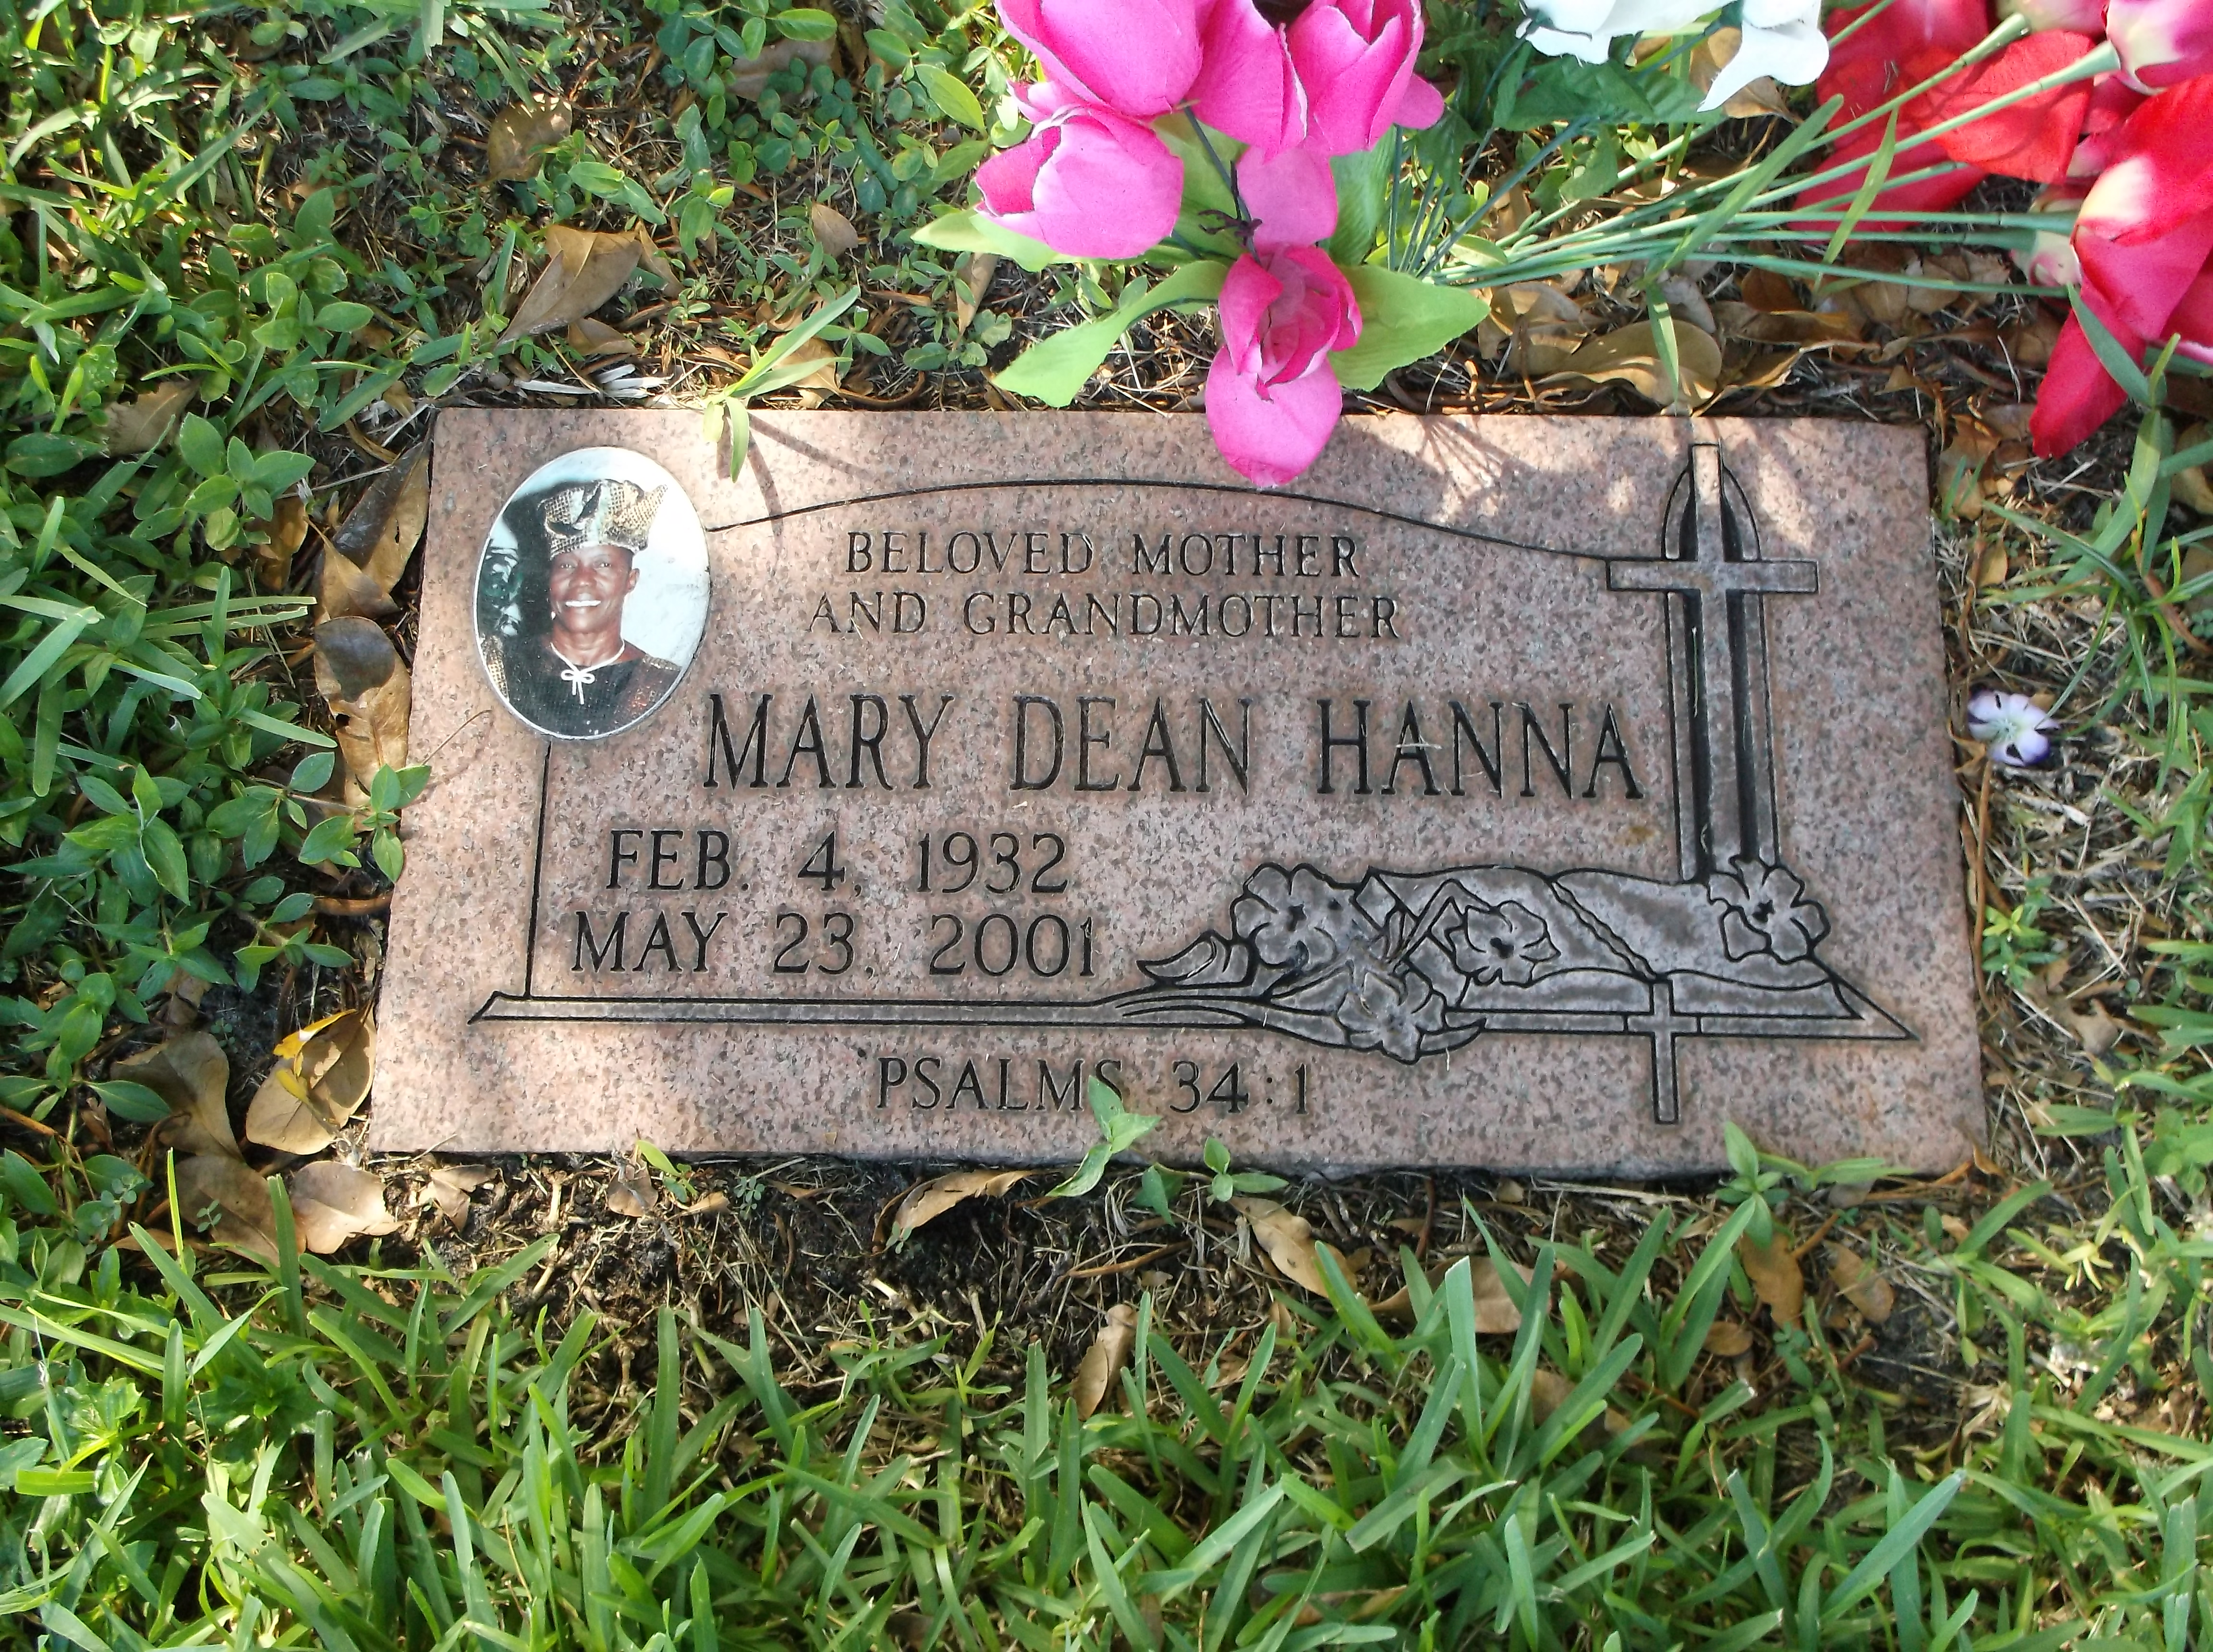 Mary Dean Hanna